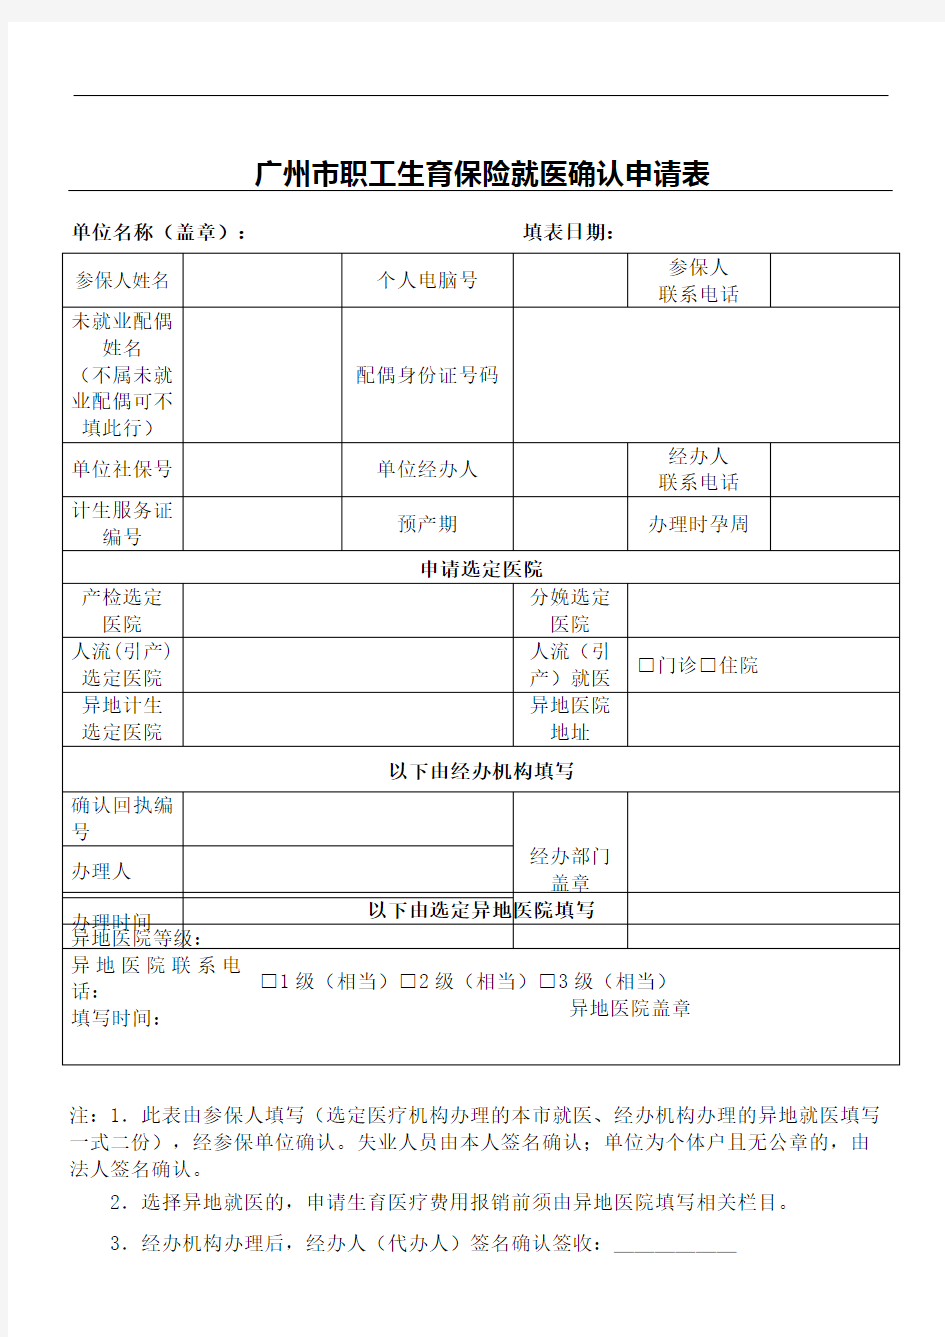 广州市职工生育保险就医确认申请表格